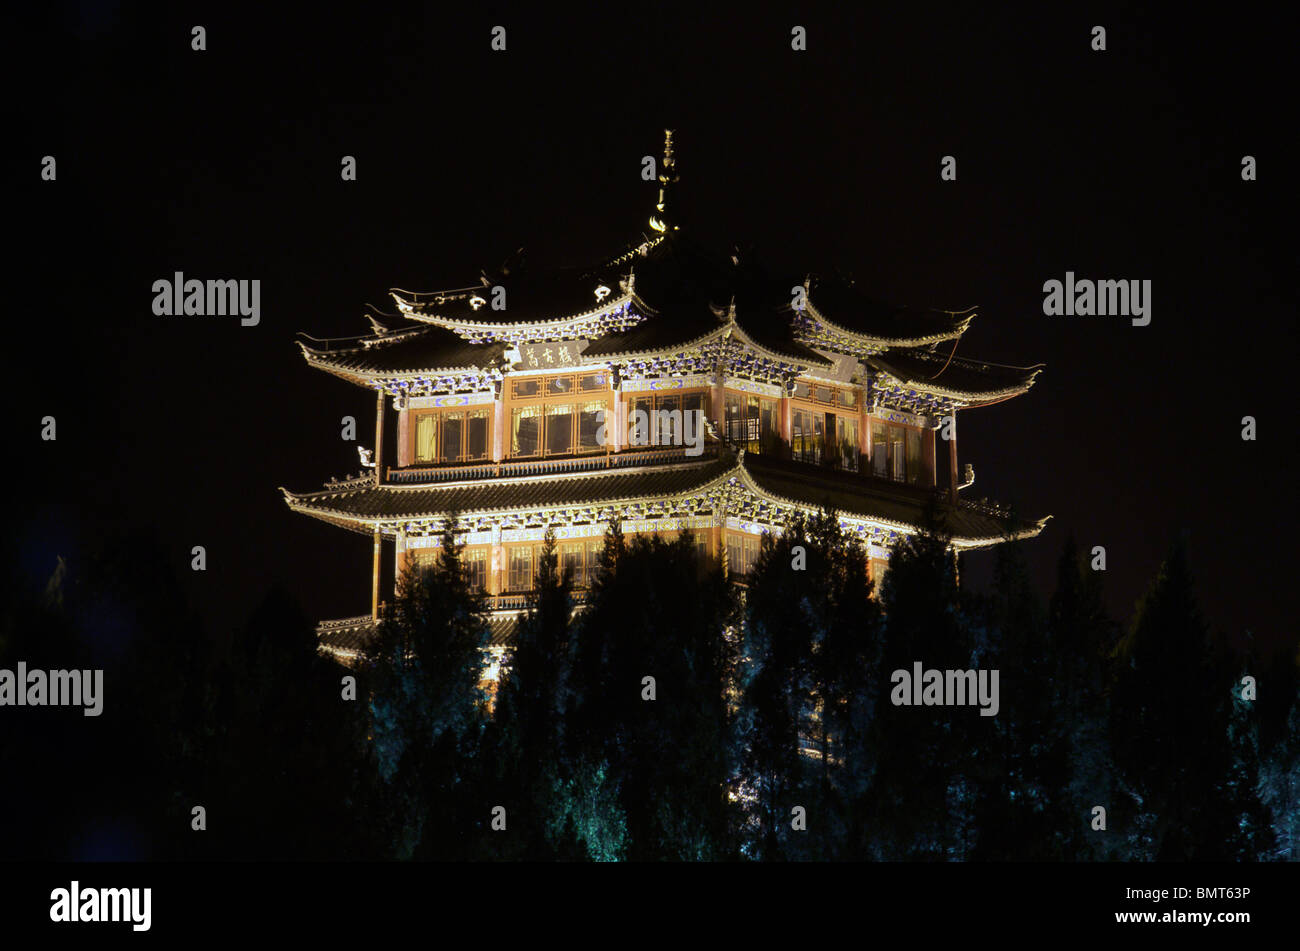 Lit Pavilion at night Lijiang Yunnan China Stock Photo